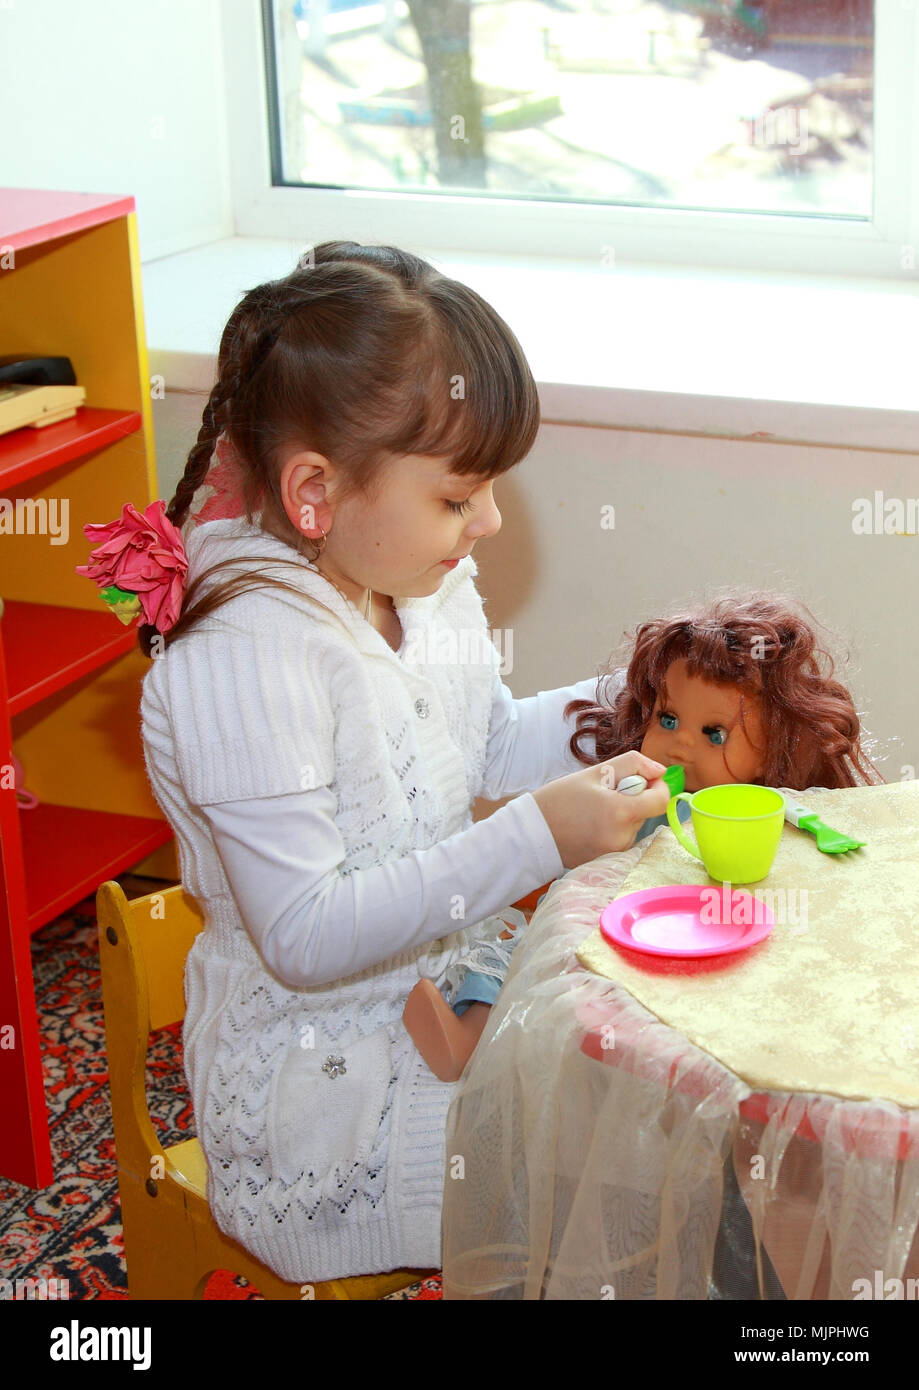 Enfant en maternelle. La petite fille nourrit la poupée. Banque D'Images